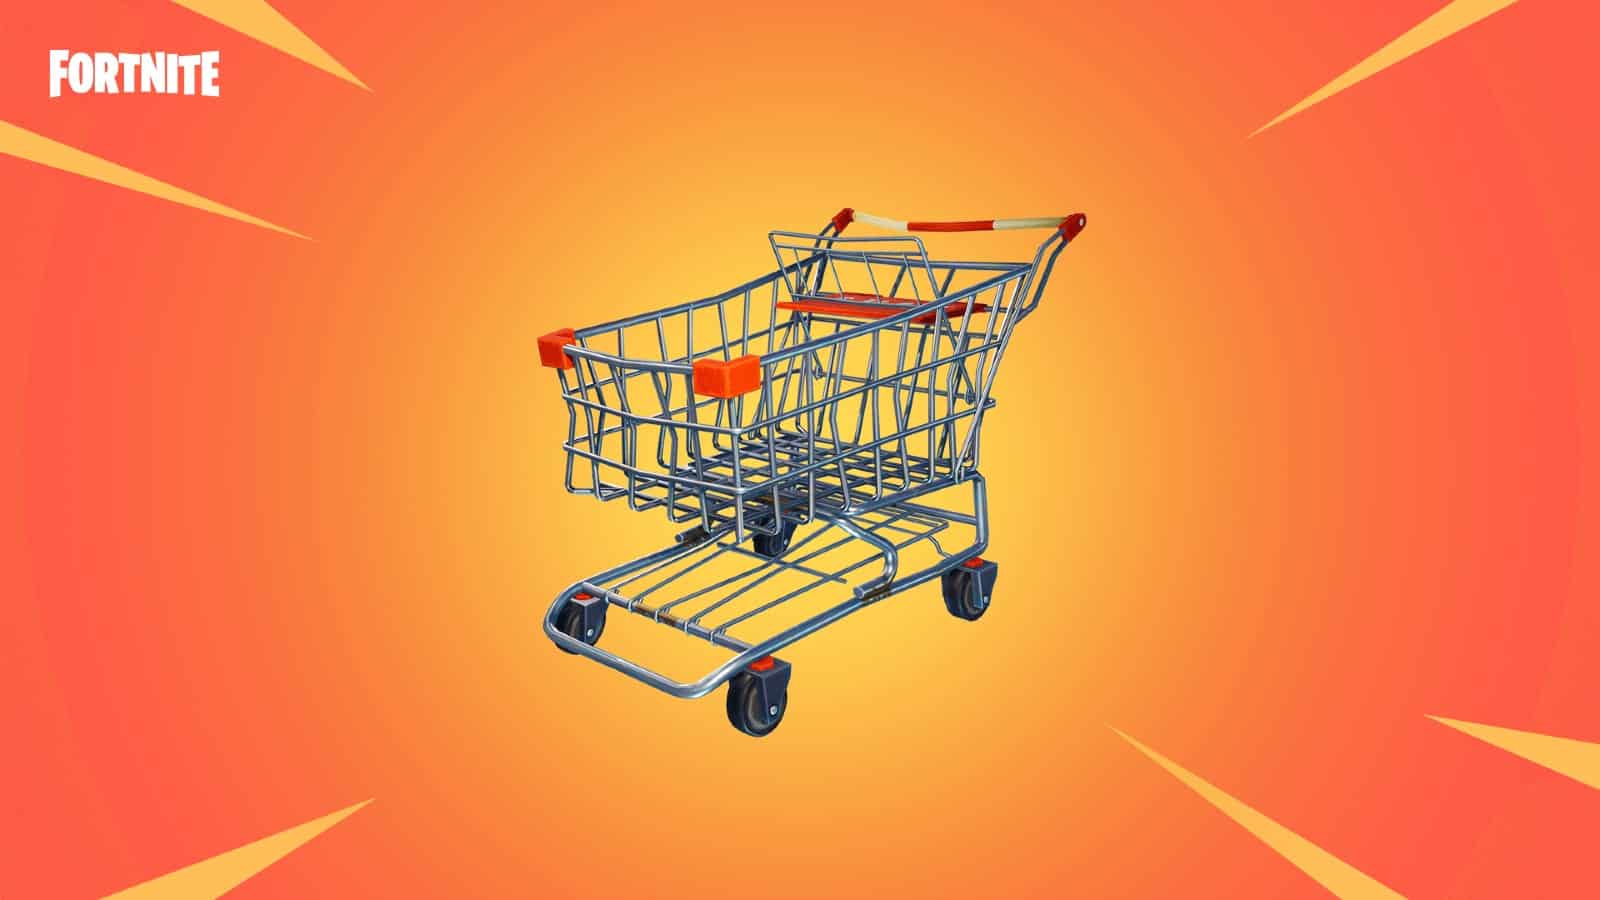 The returning Shopping Cart in Fortnite